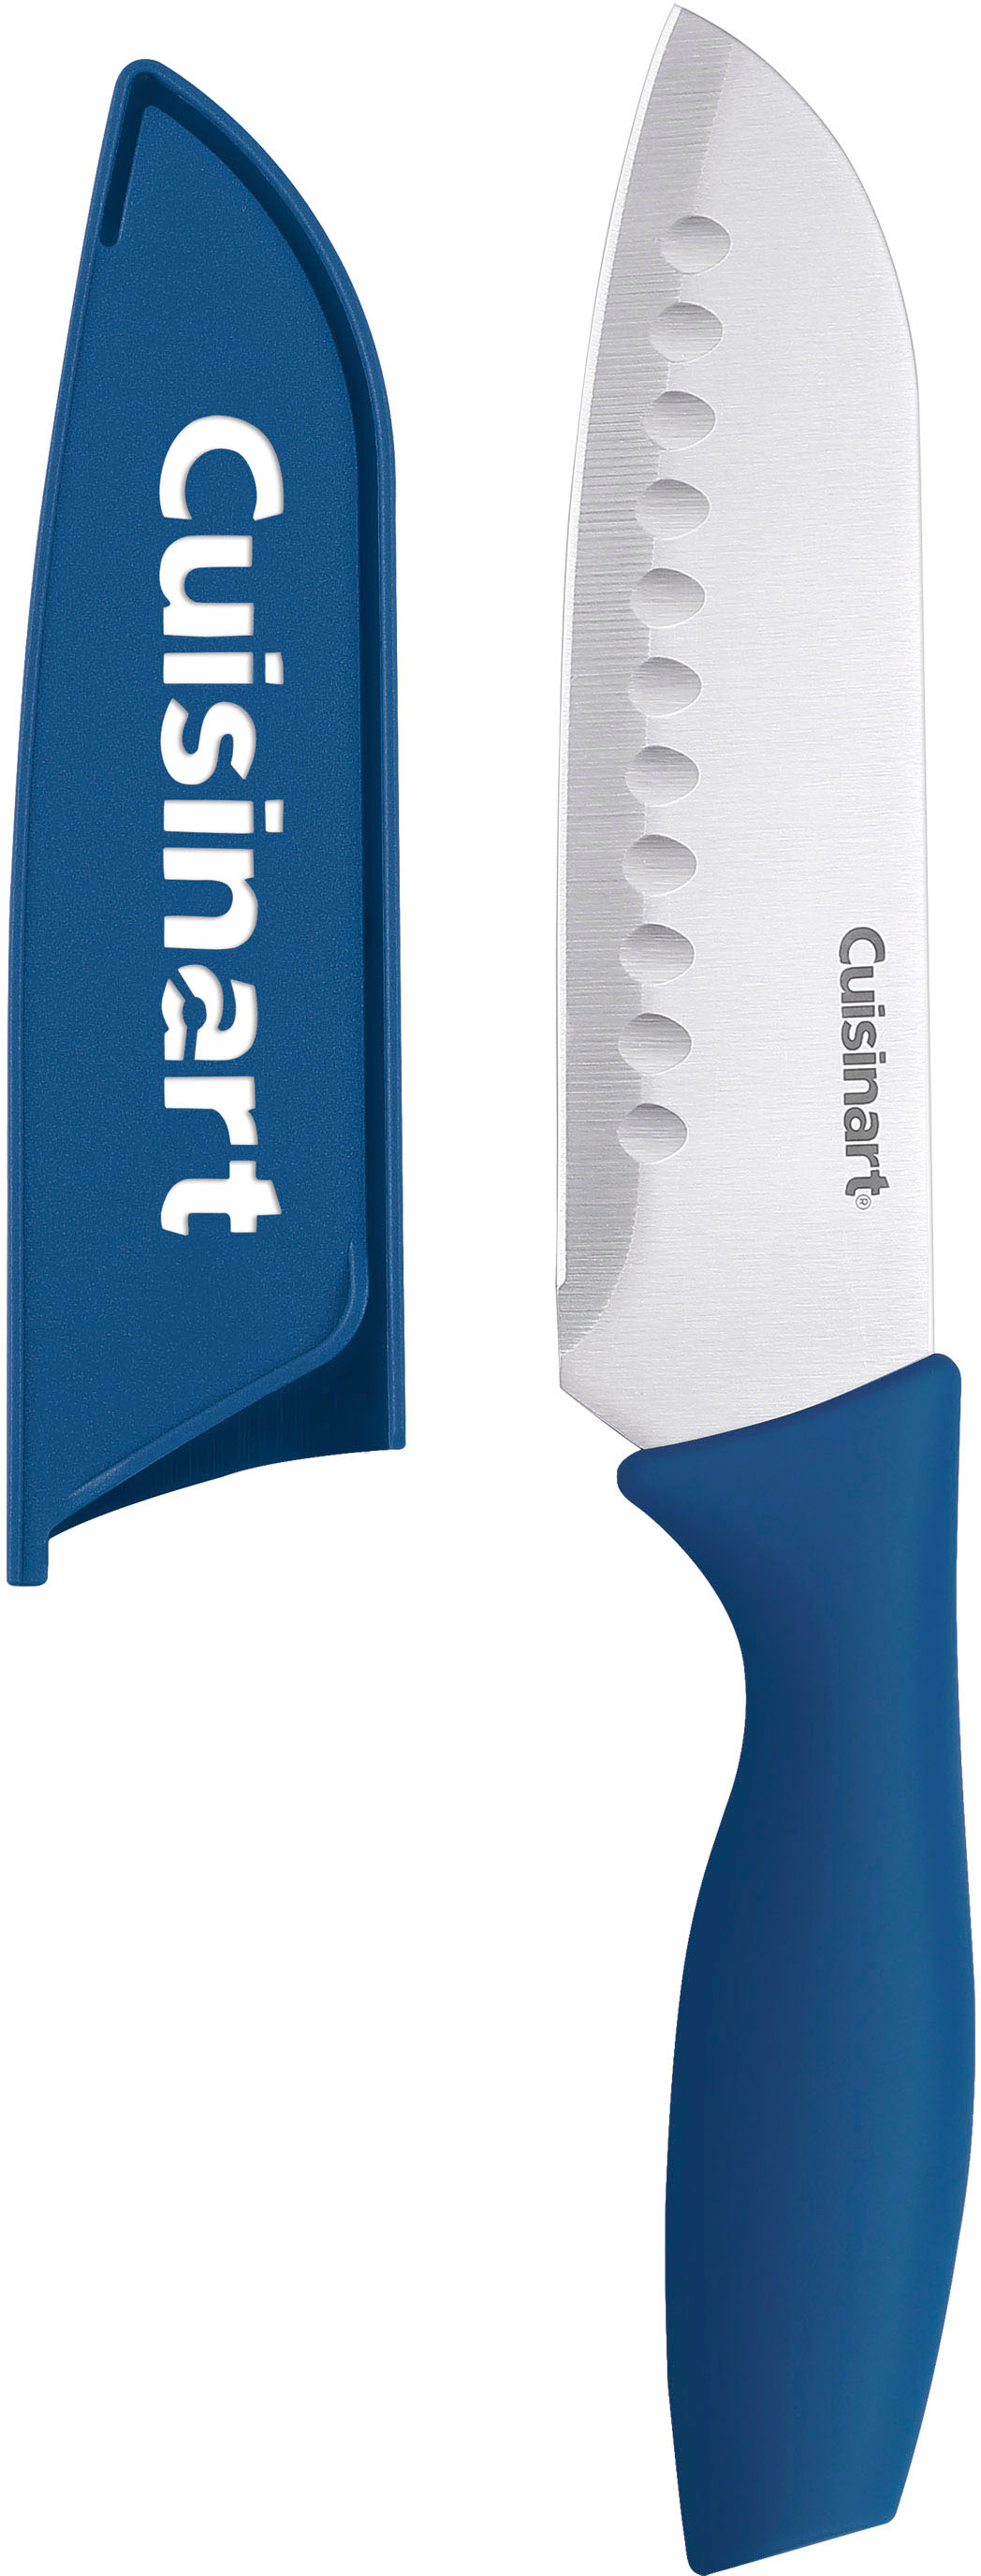 Cuisinart Ceramic Knife Set